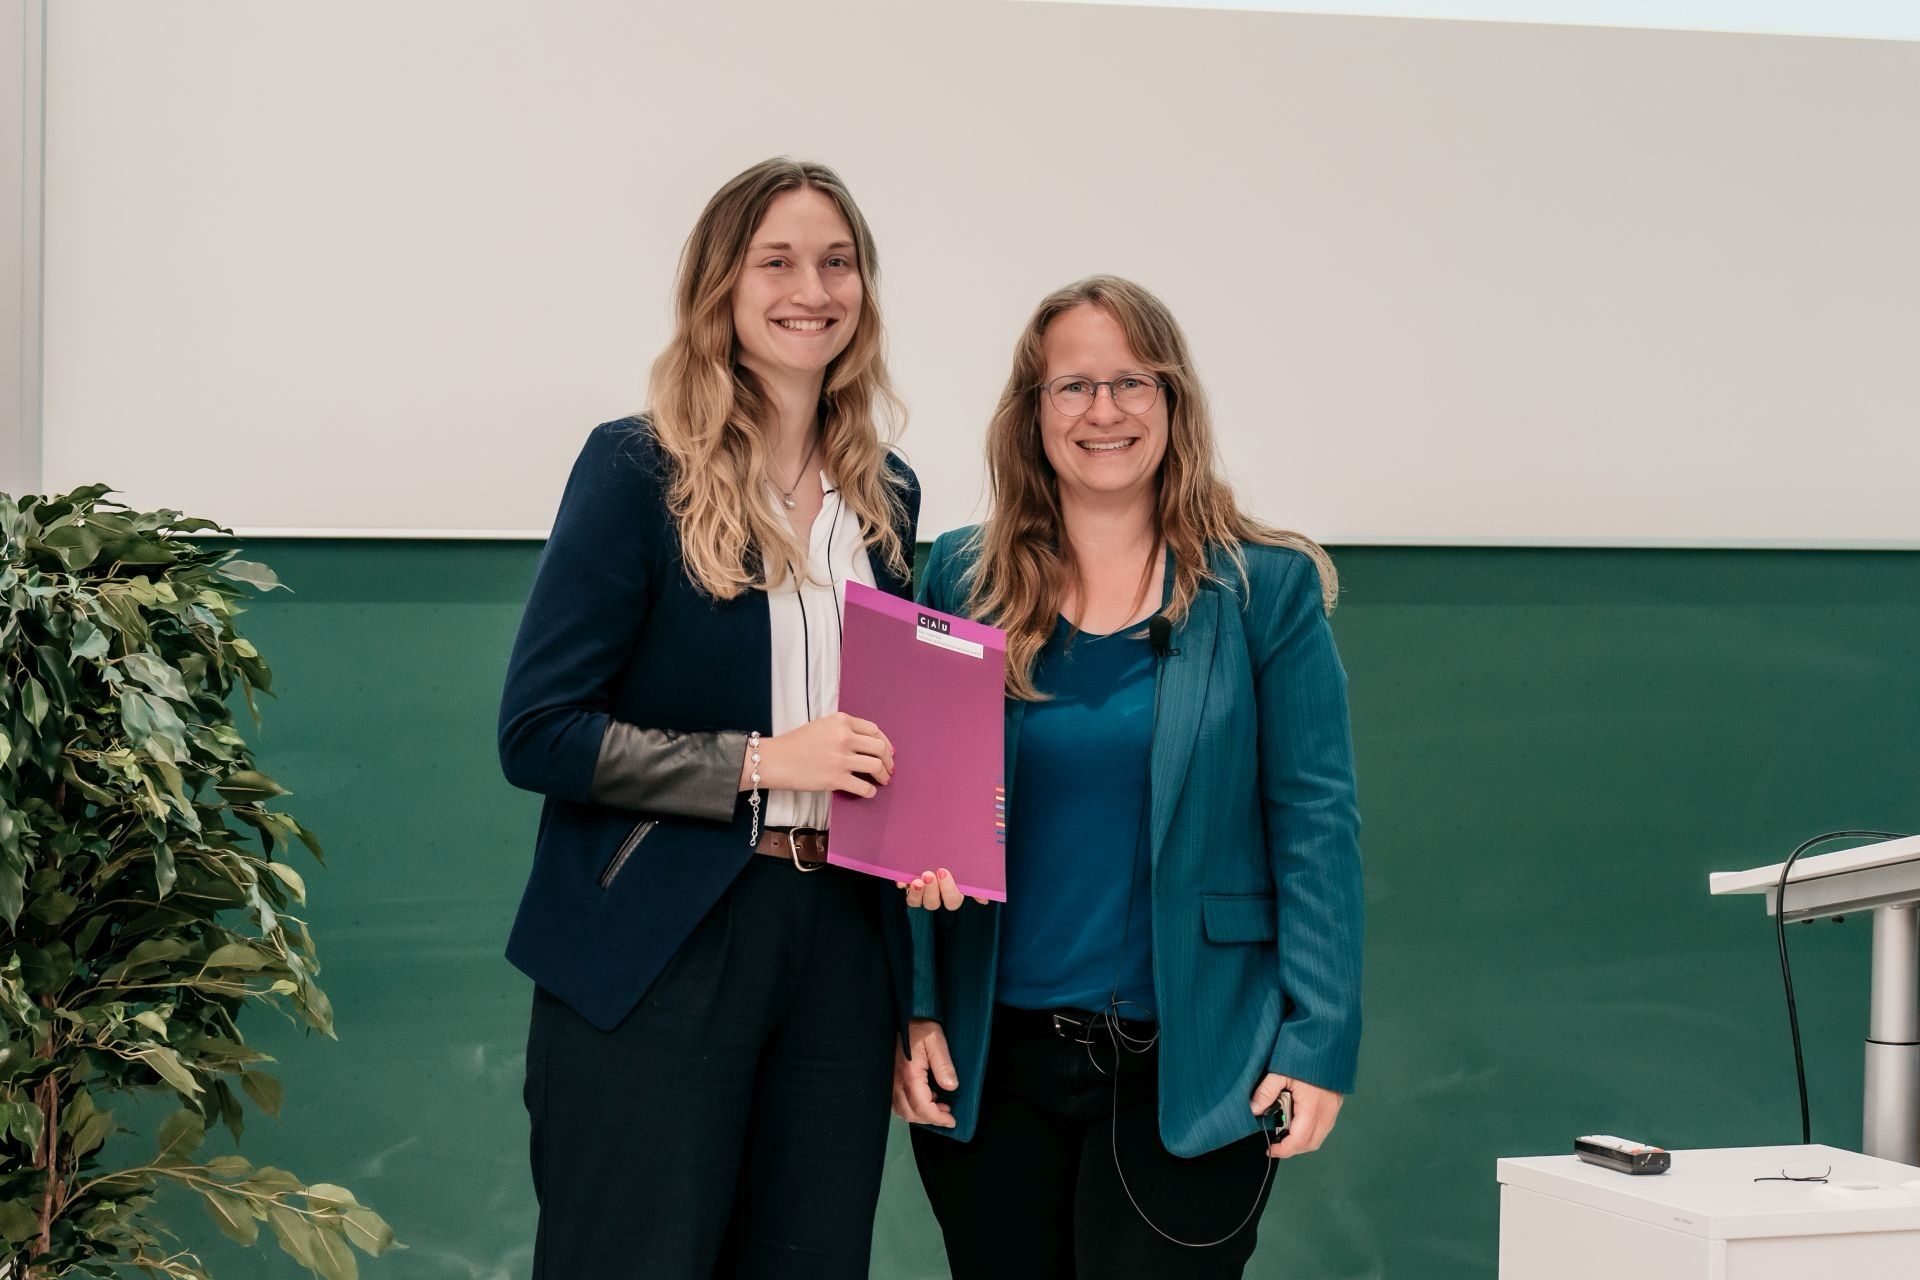 Preisträgerin Lucie Bangert mit Frau Prof. Martina Gerken, Dekanin der Technischen Fakultät der Uni Kiel.